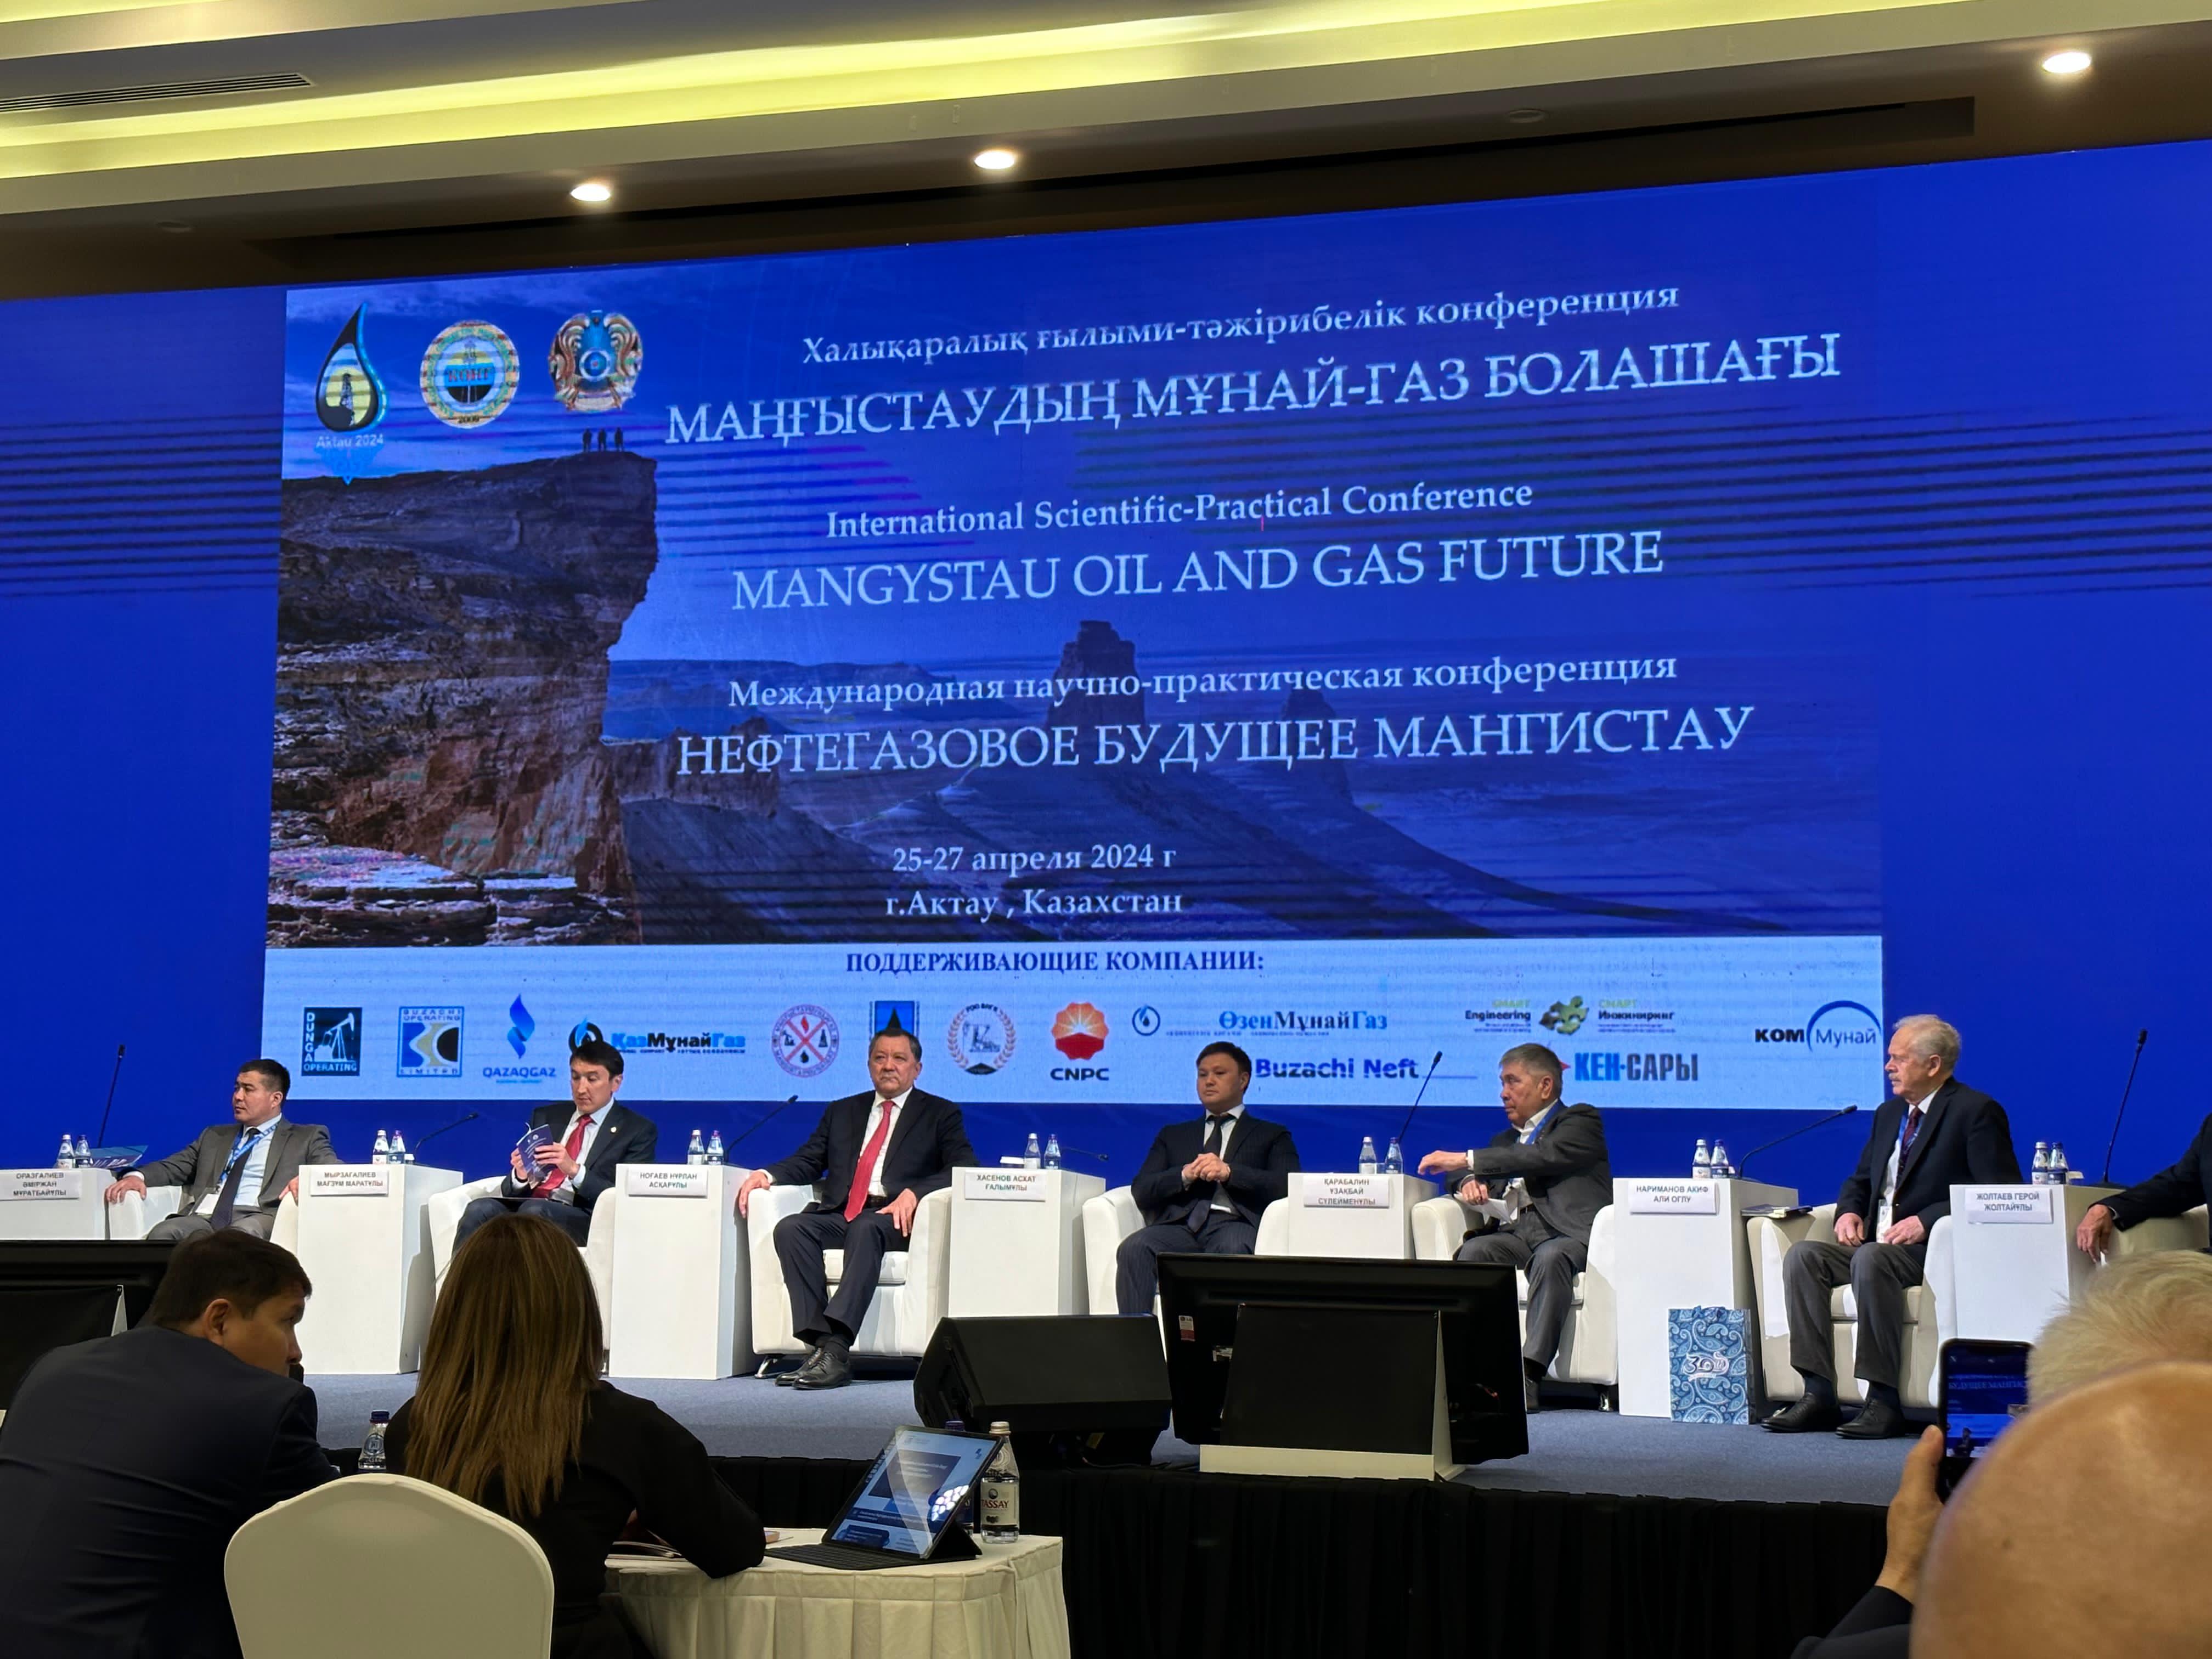 Вице-министр энергетики А. Хасенов принял участие в Международной научно-практической конференции "Нефтегазовое будущее Мангистау"